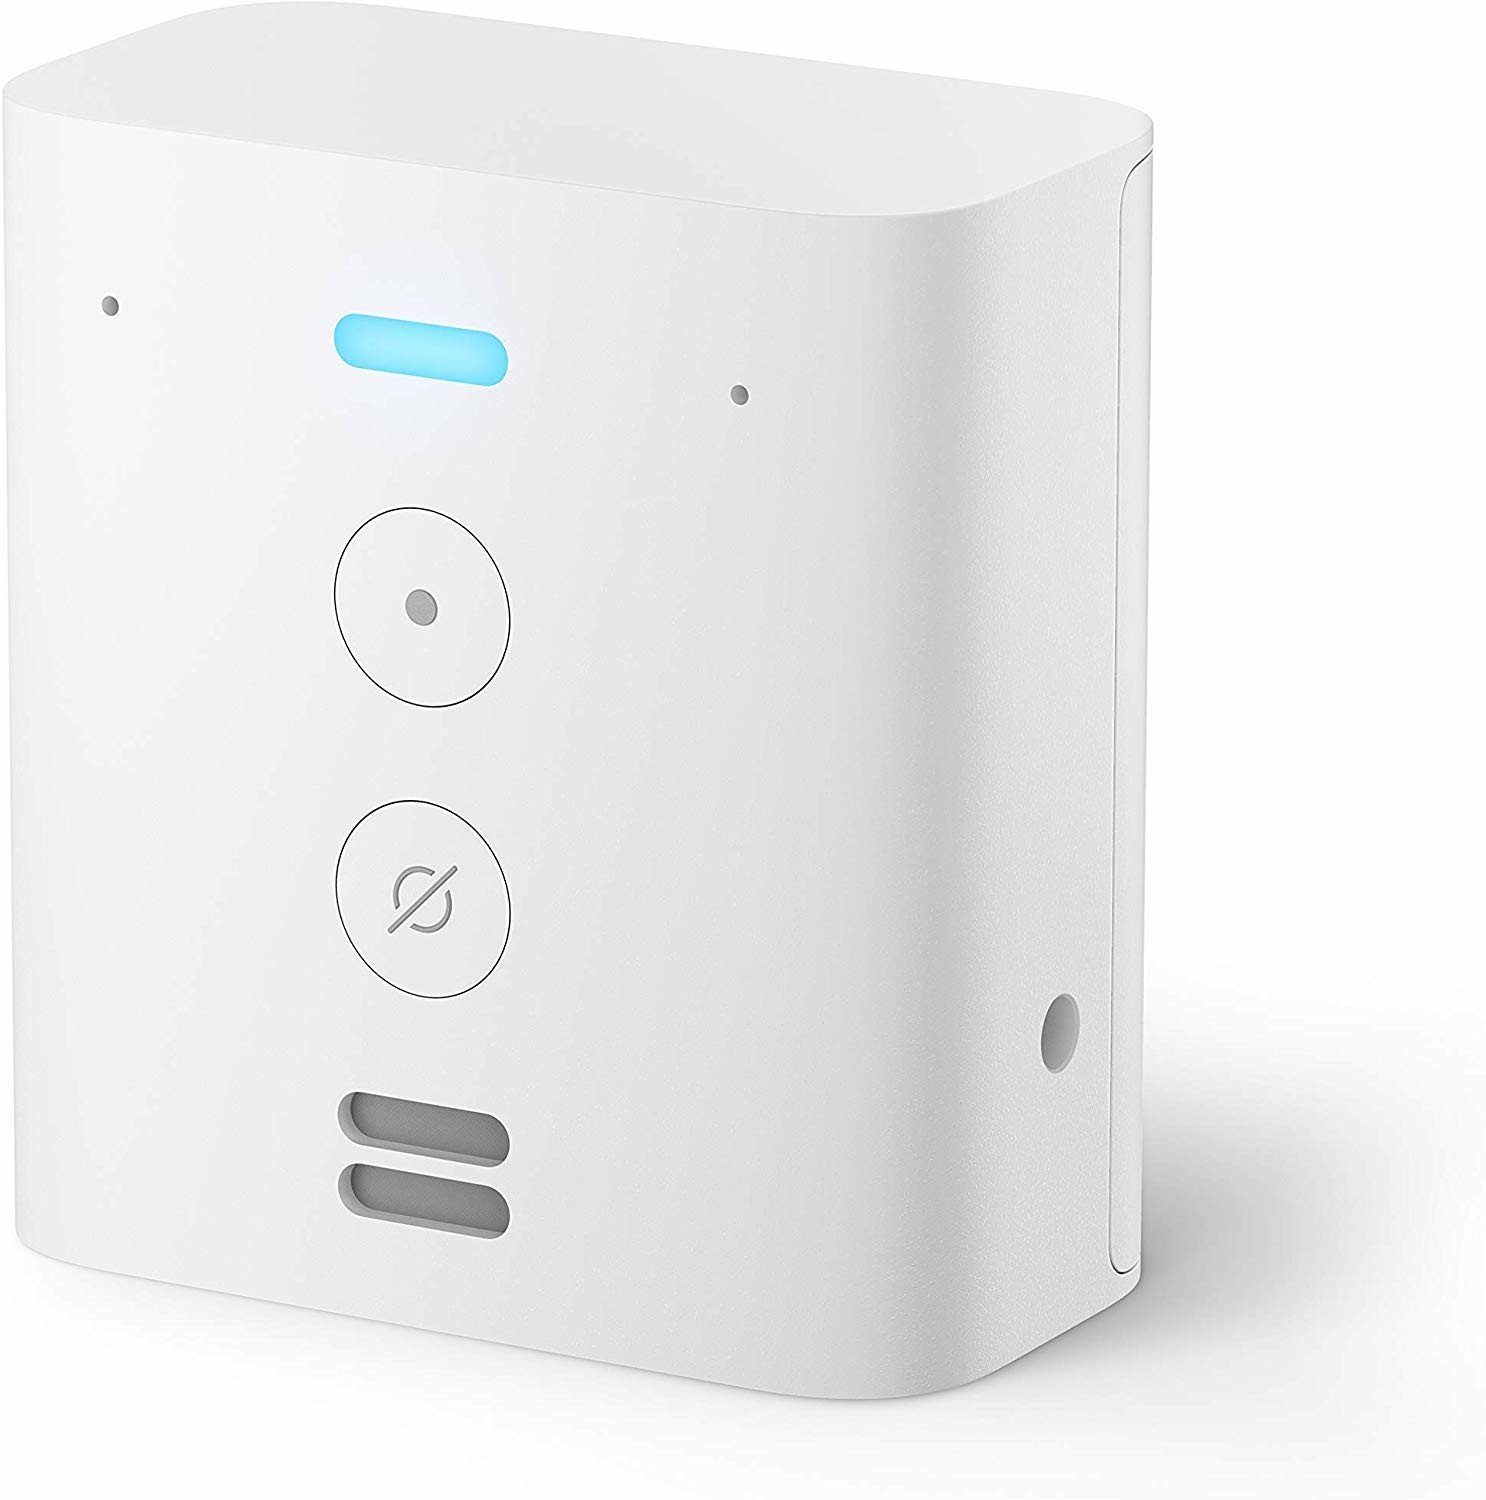 Amazon Echo Flex Steuert Smart Home-Geräte mit Alexa Smart Assistant weiß  Smart Speaker online kaufen | OTTO